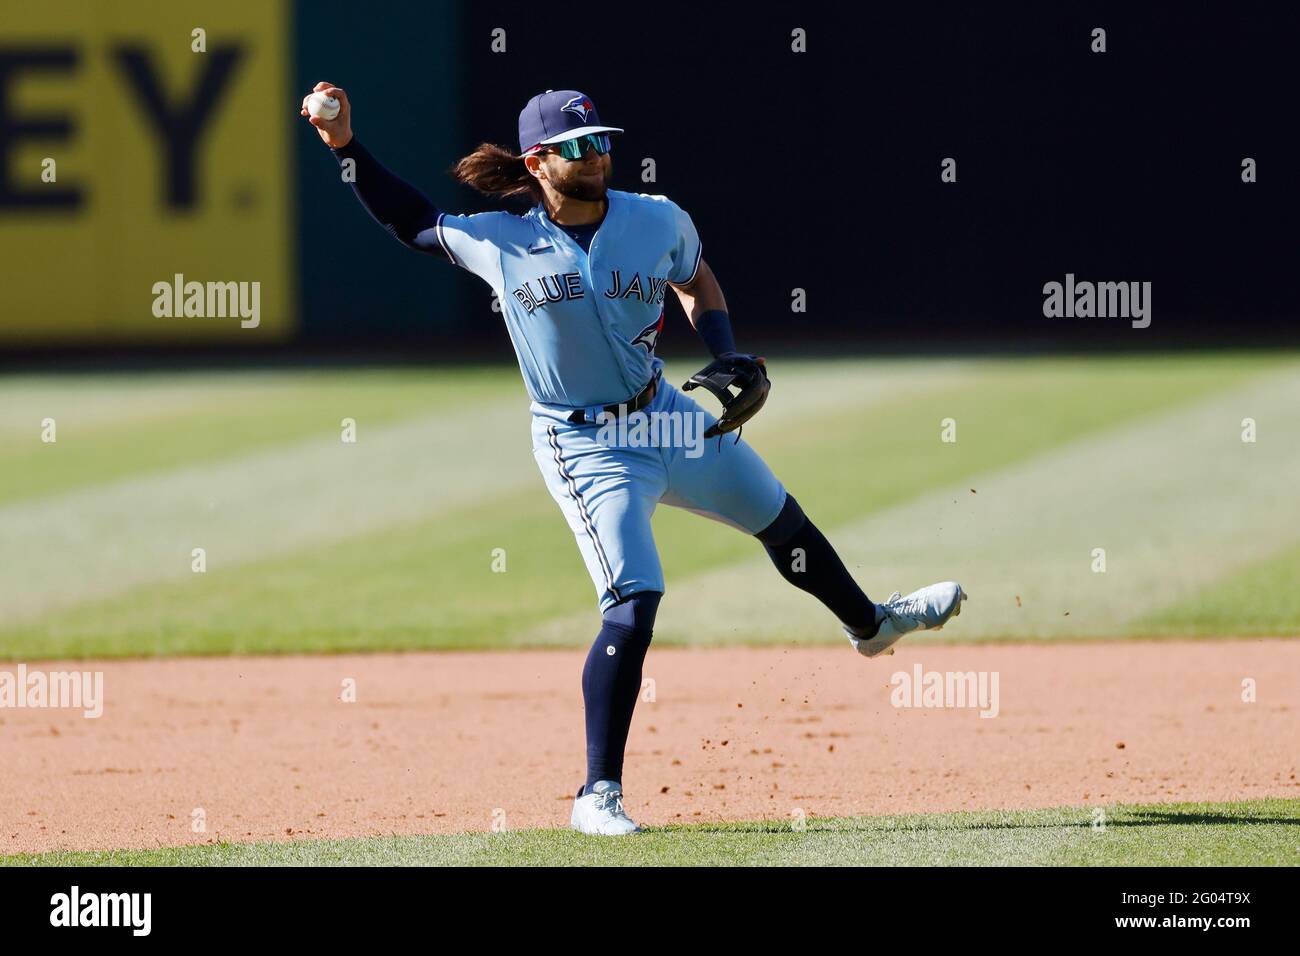 Albert Belle baseball Stock Photo - Alamy